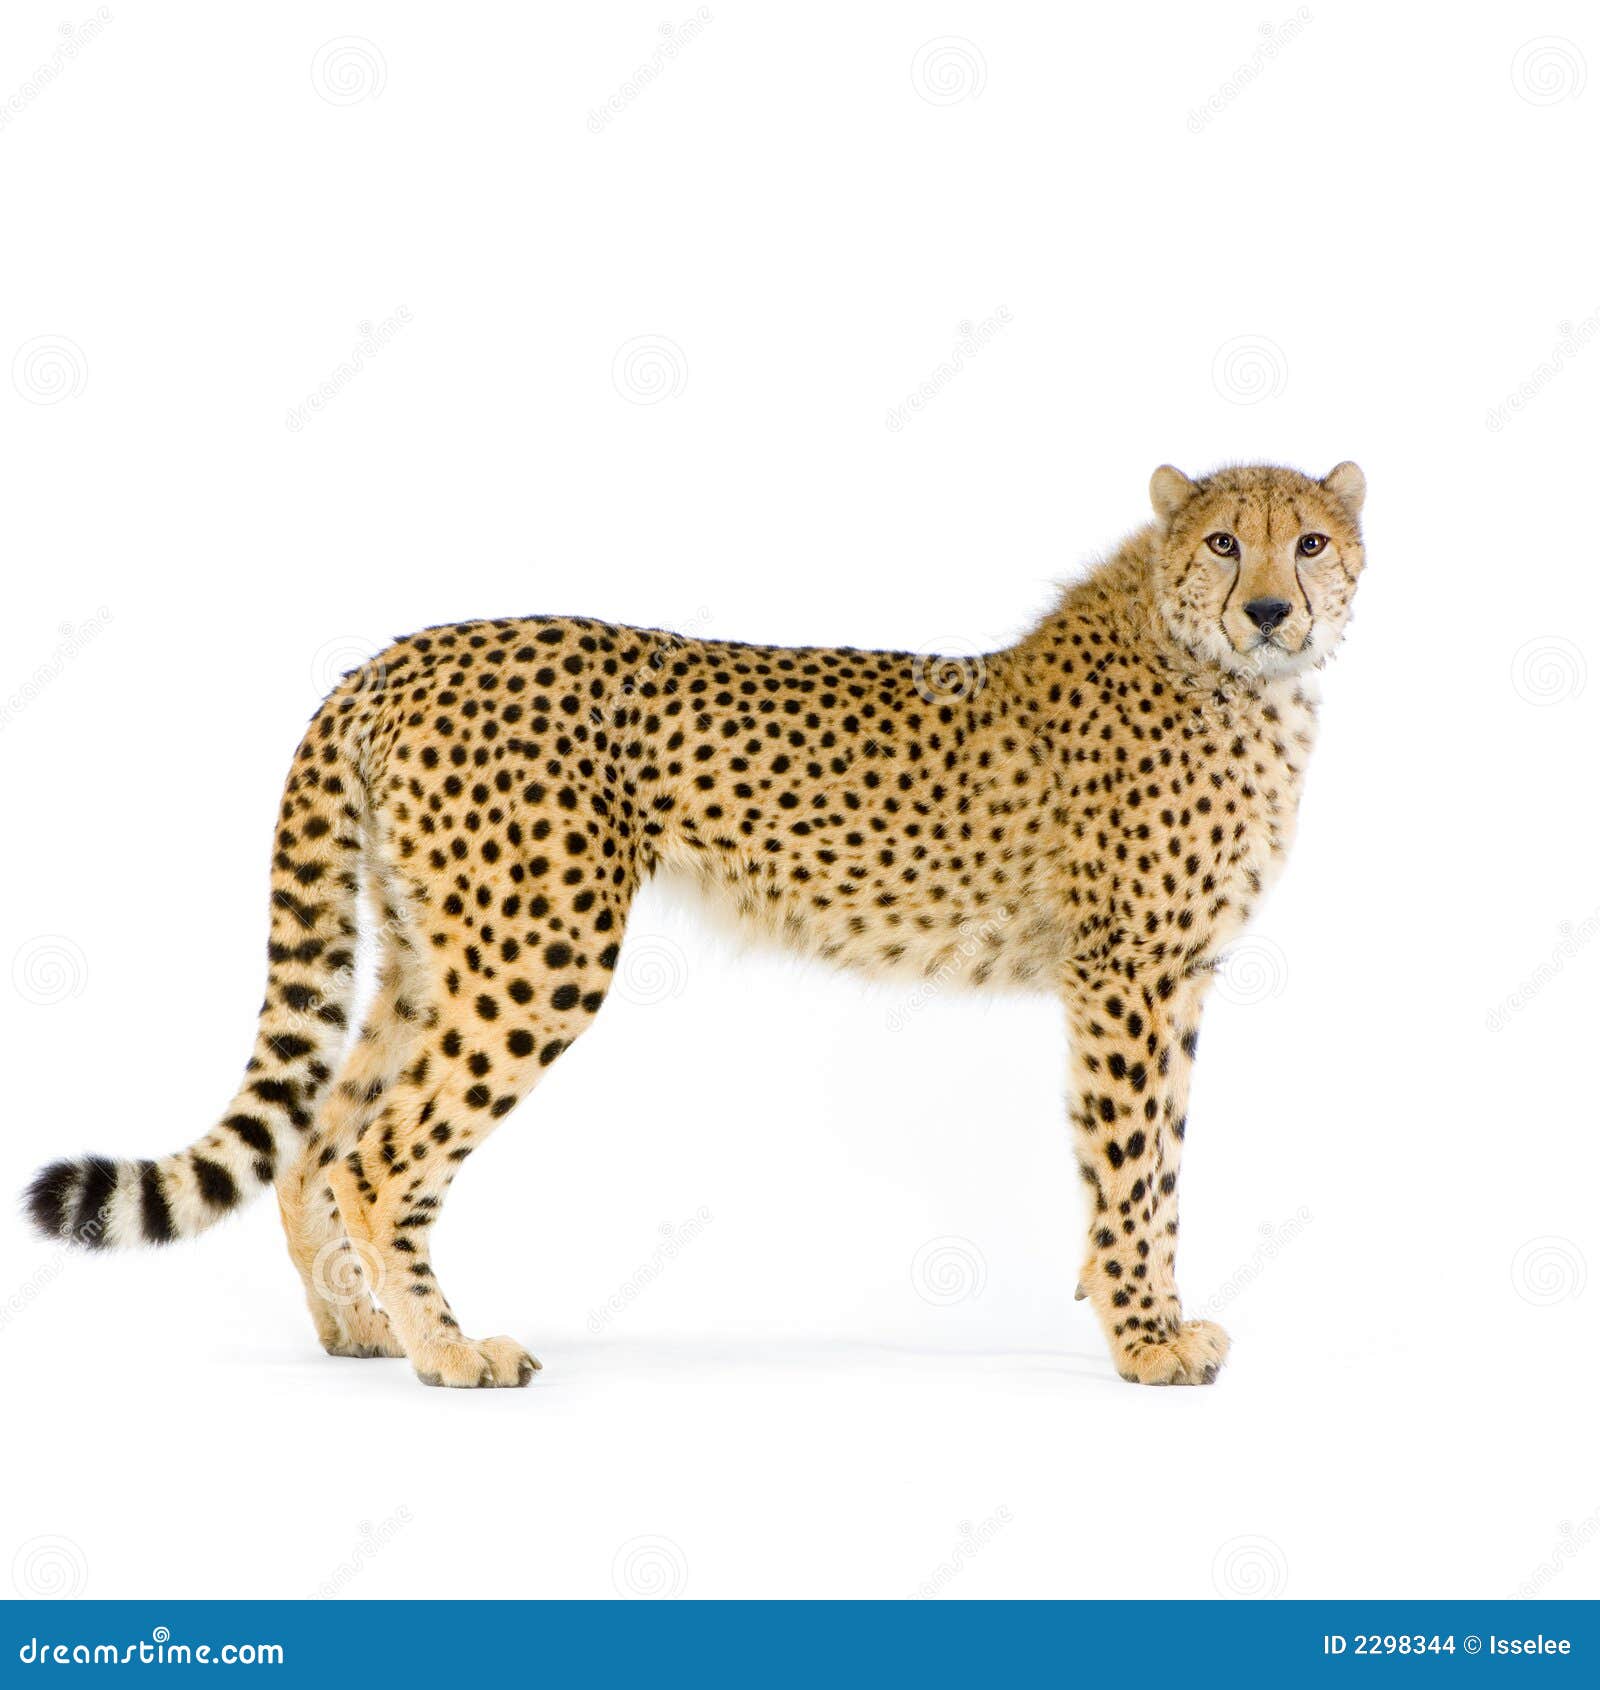 cheetah standing up